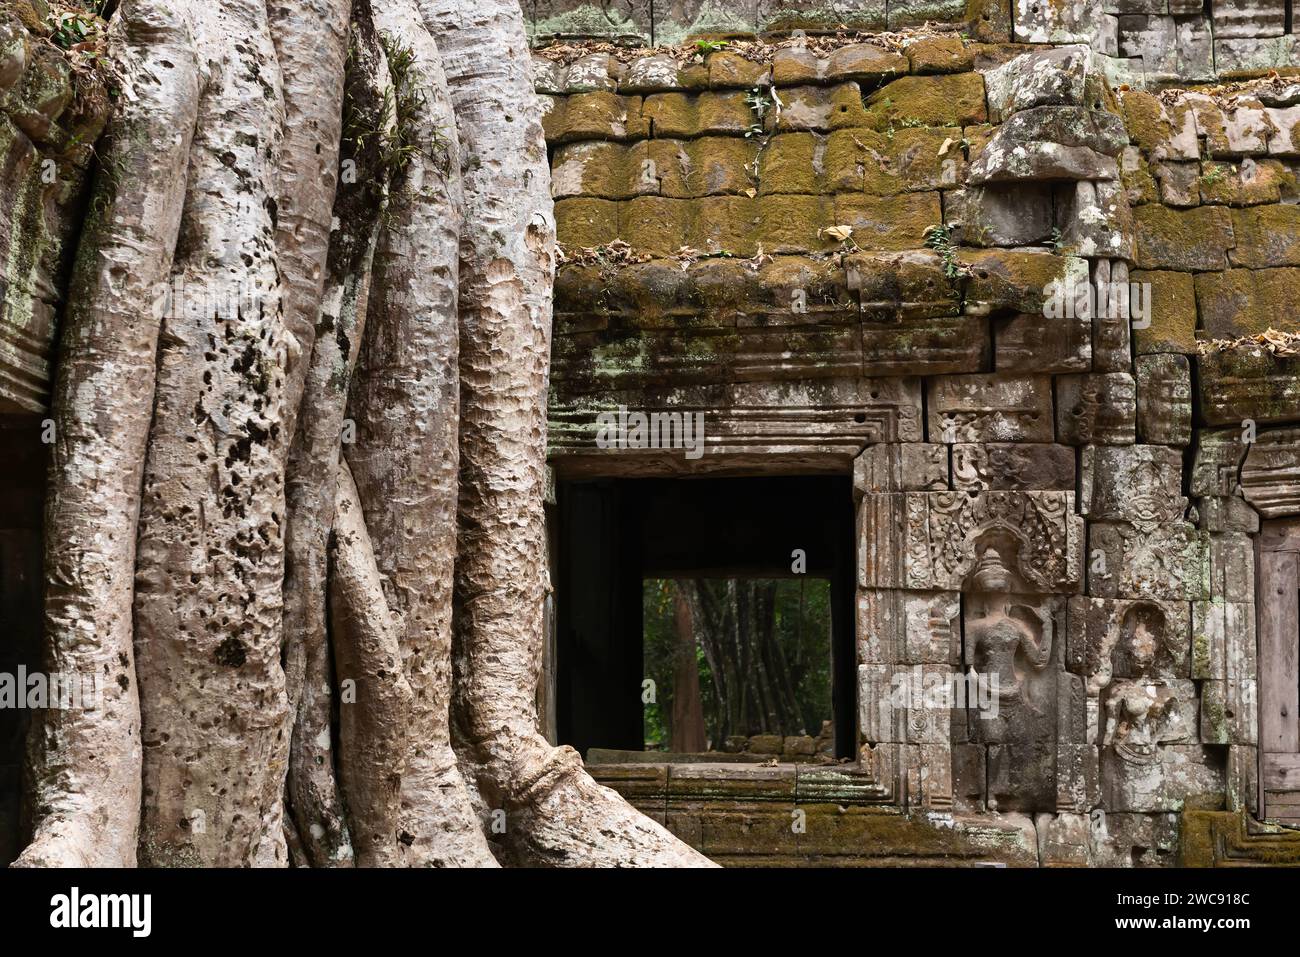 Racines d'arbre spung couvrant les ruines du temple de Ta Prohn avec des danseurs apsara sculptés dans la pierre sur la droite Banque D'Images